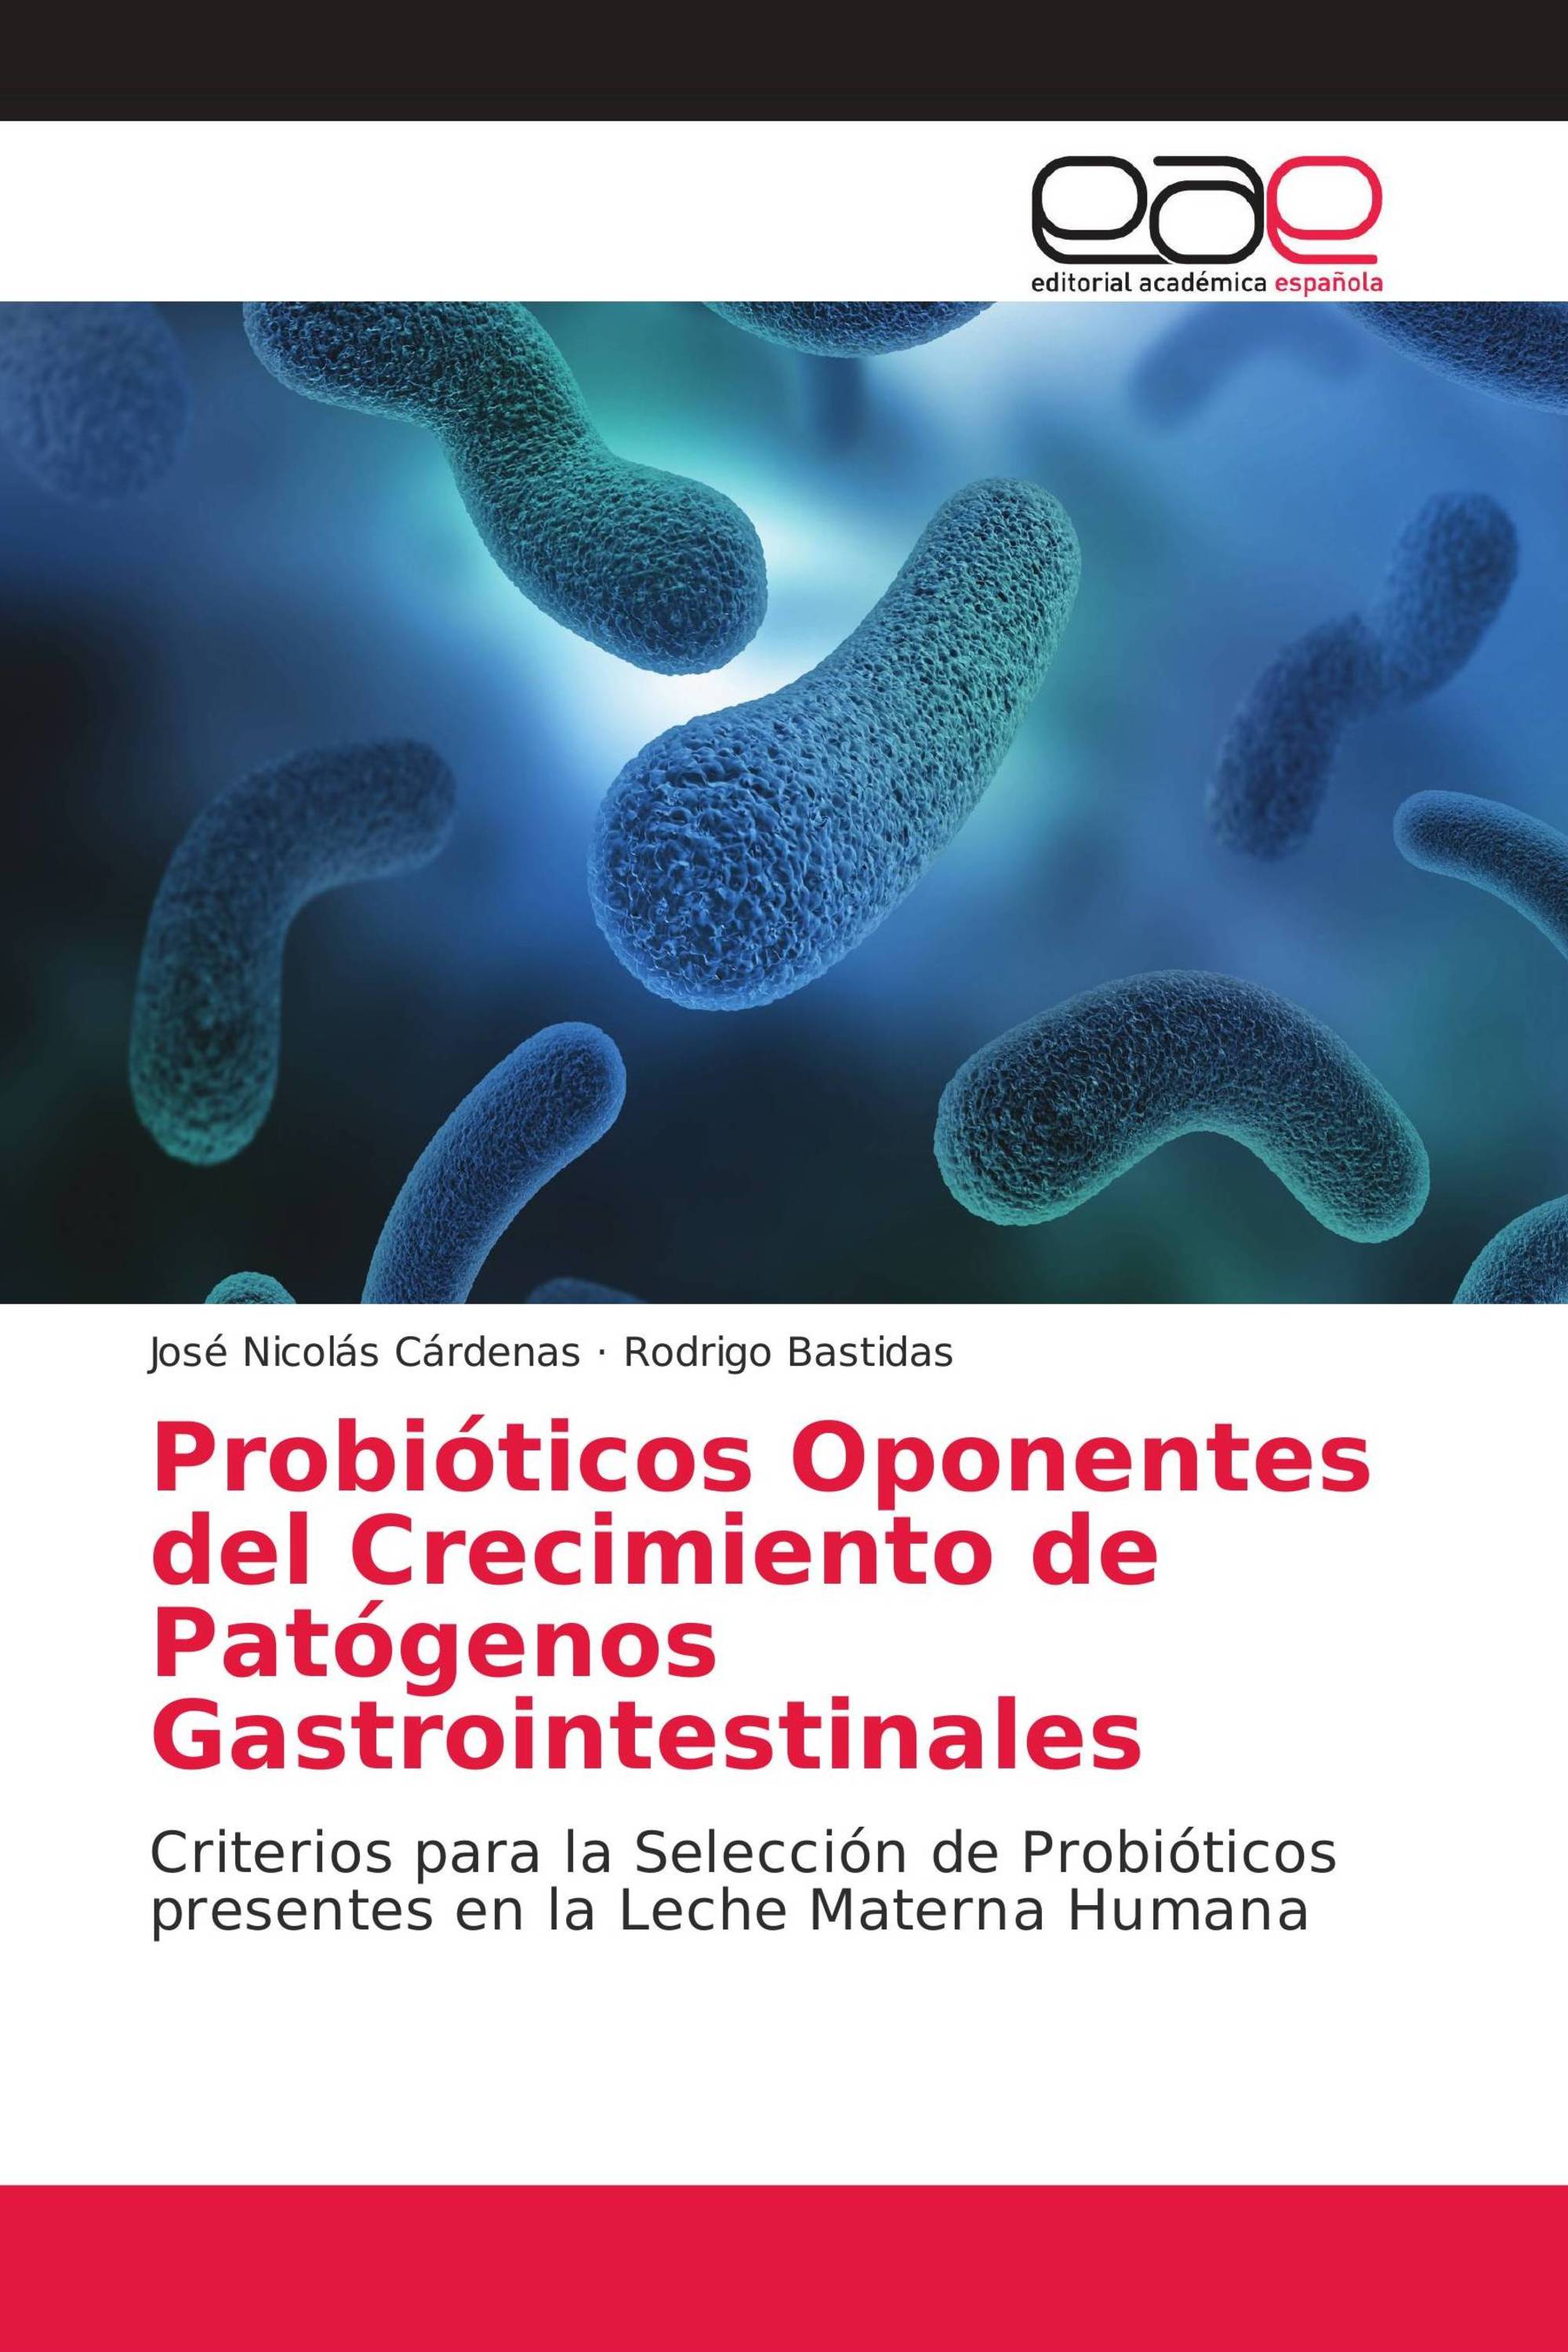 Probióticos Oponentes del Crecimiento de Patógenos Gastrointestinales